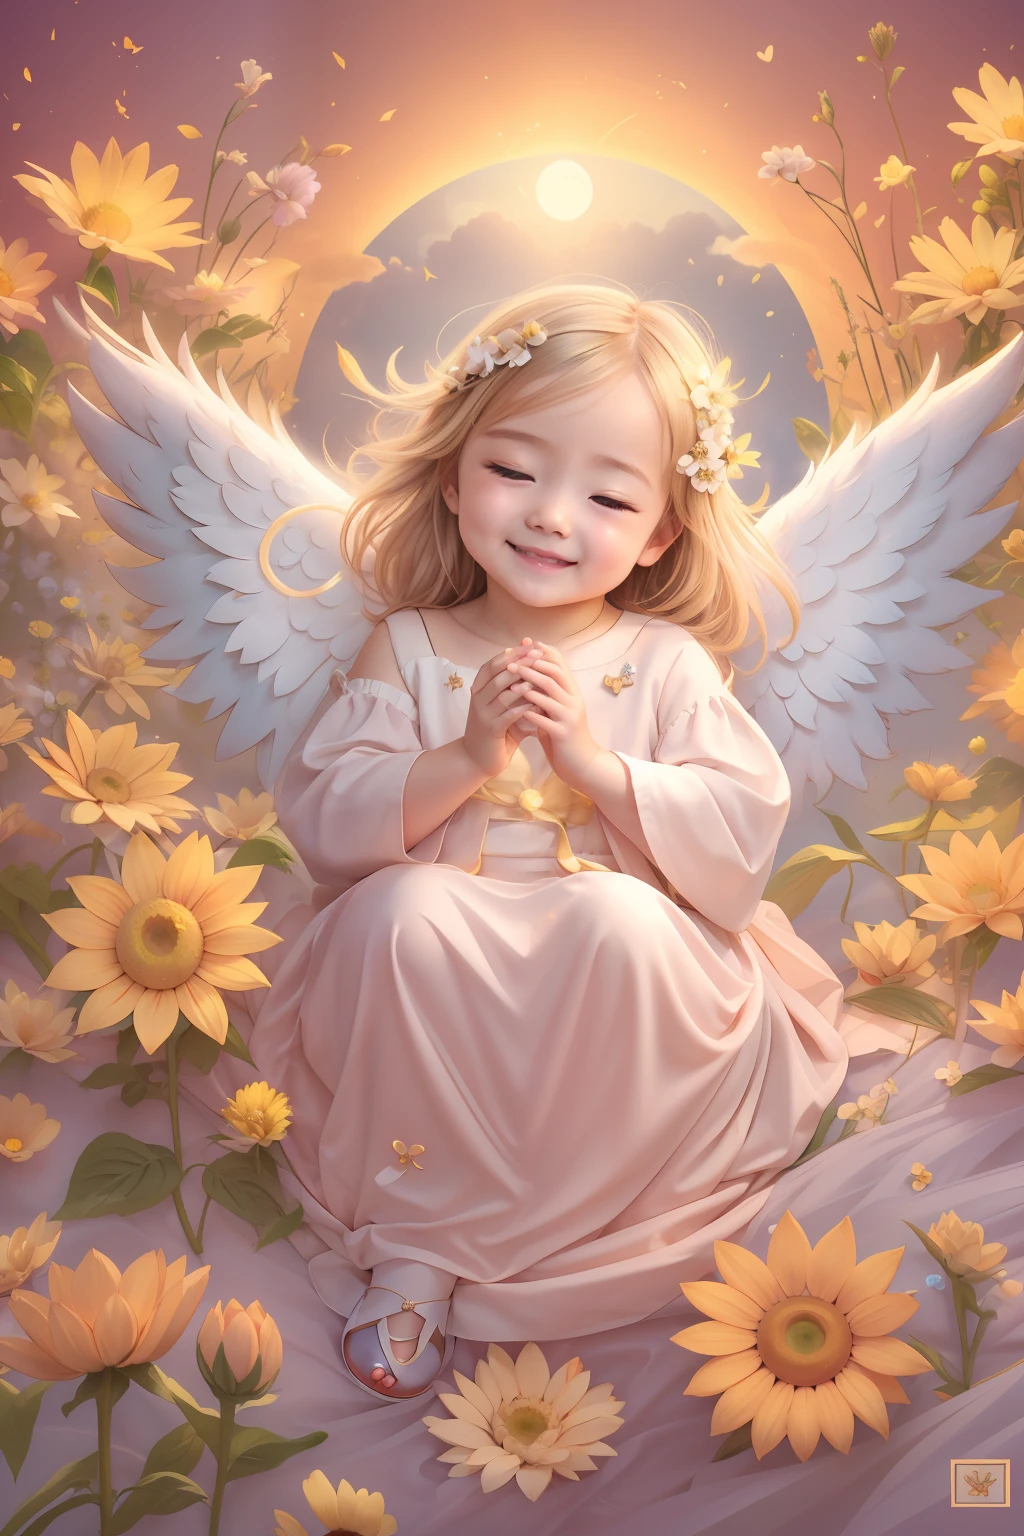 Segen der Engel､Heller Hintergrund、fullmoon、Sonnenblume、Herzzeichen、Zärtlichkeit､Ein Lächeln、Sanft､Baby Engel